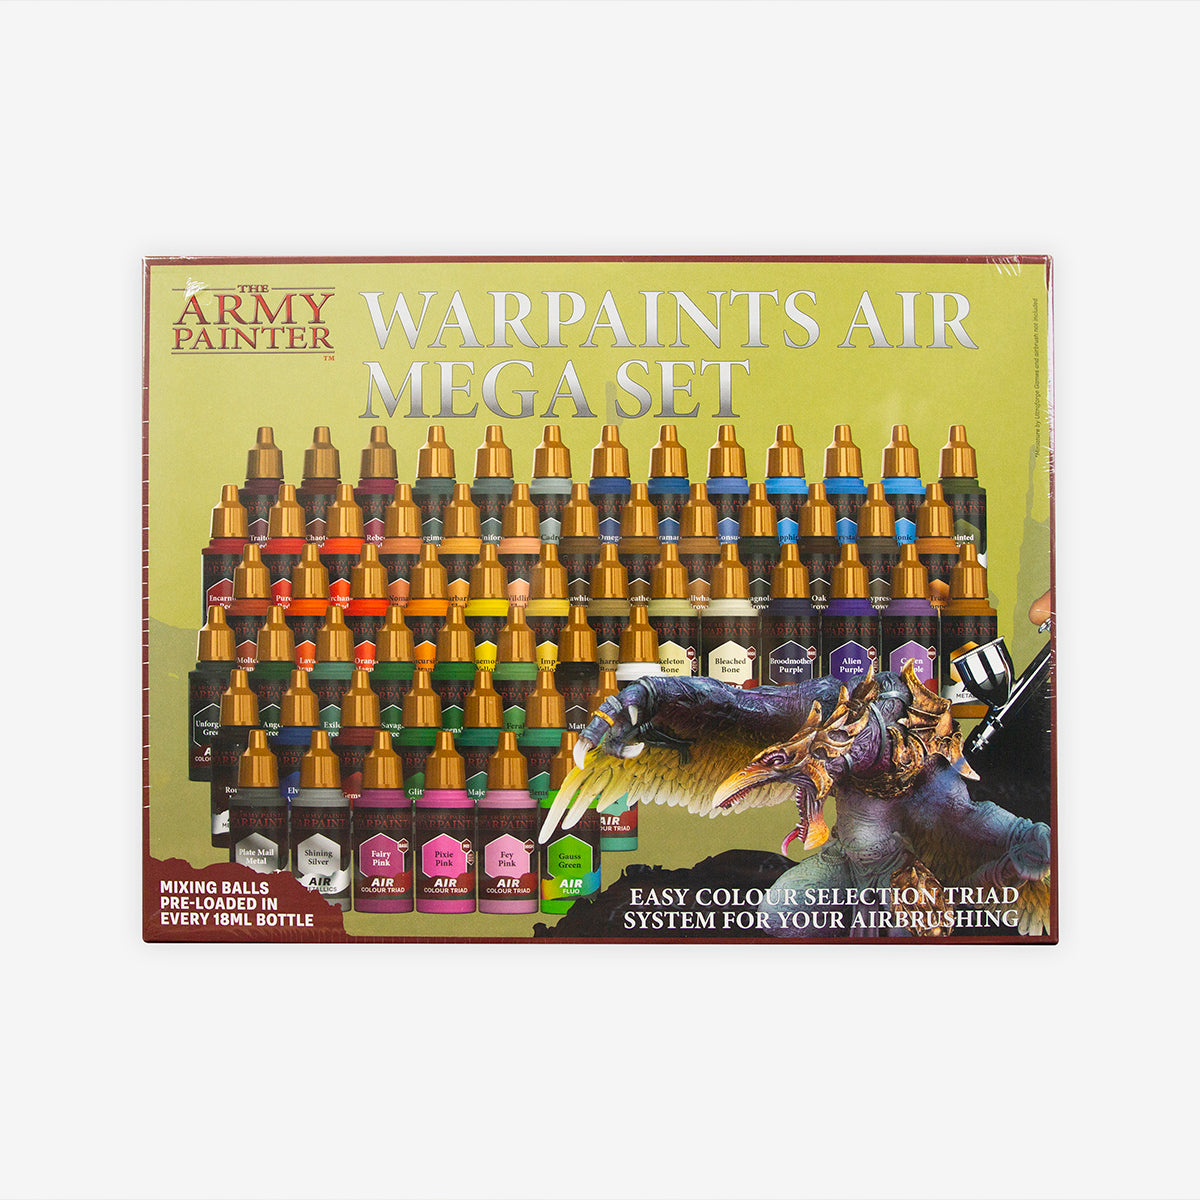 The Army Painter : Warpaints Air Mega Set